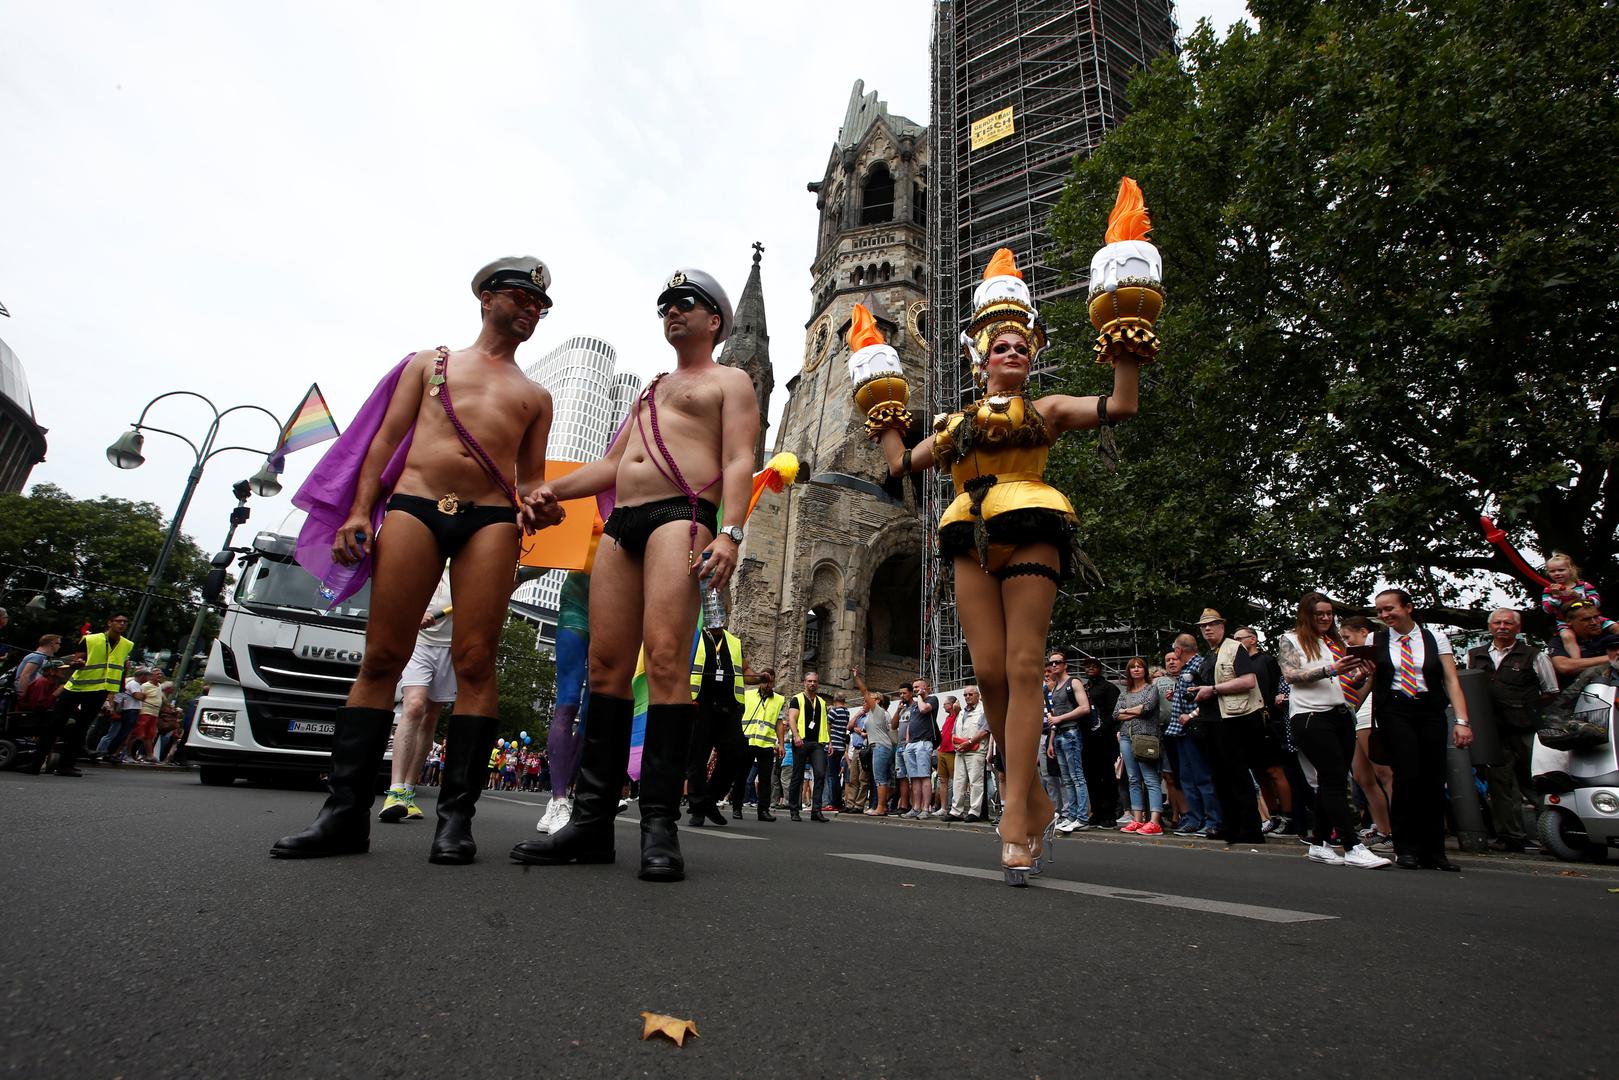 Nekoliko desetaka tisuća ljudi je u sklopu tradicionalnog Gay Pridea u Berlinu proslavilo donošenje zakona o sklapanju brakova između istospolnih partnera,... (Hina)